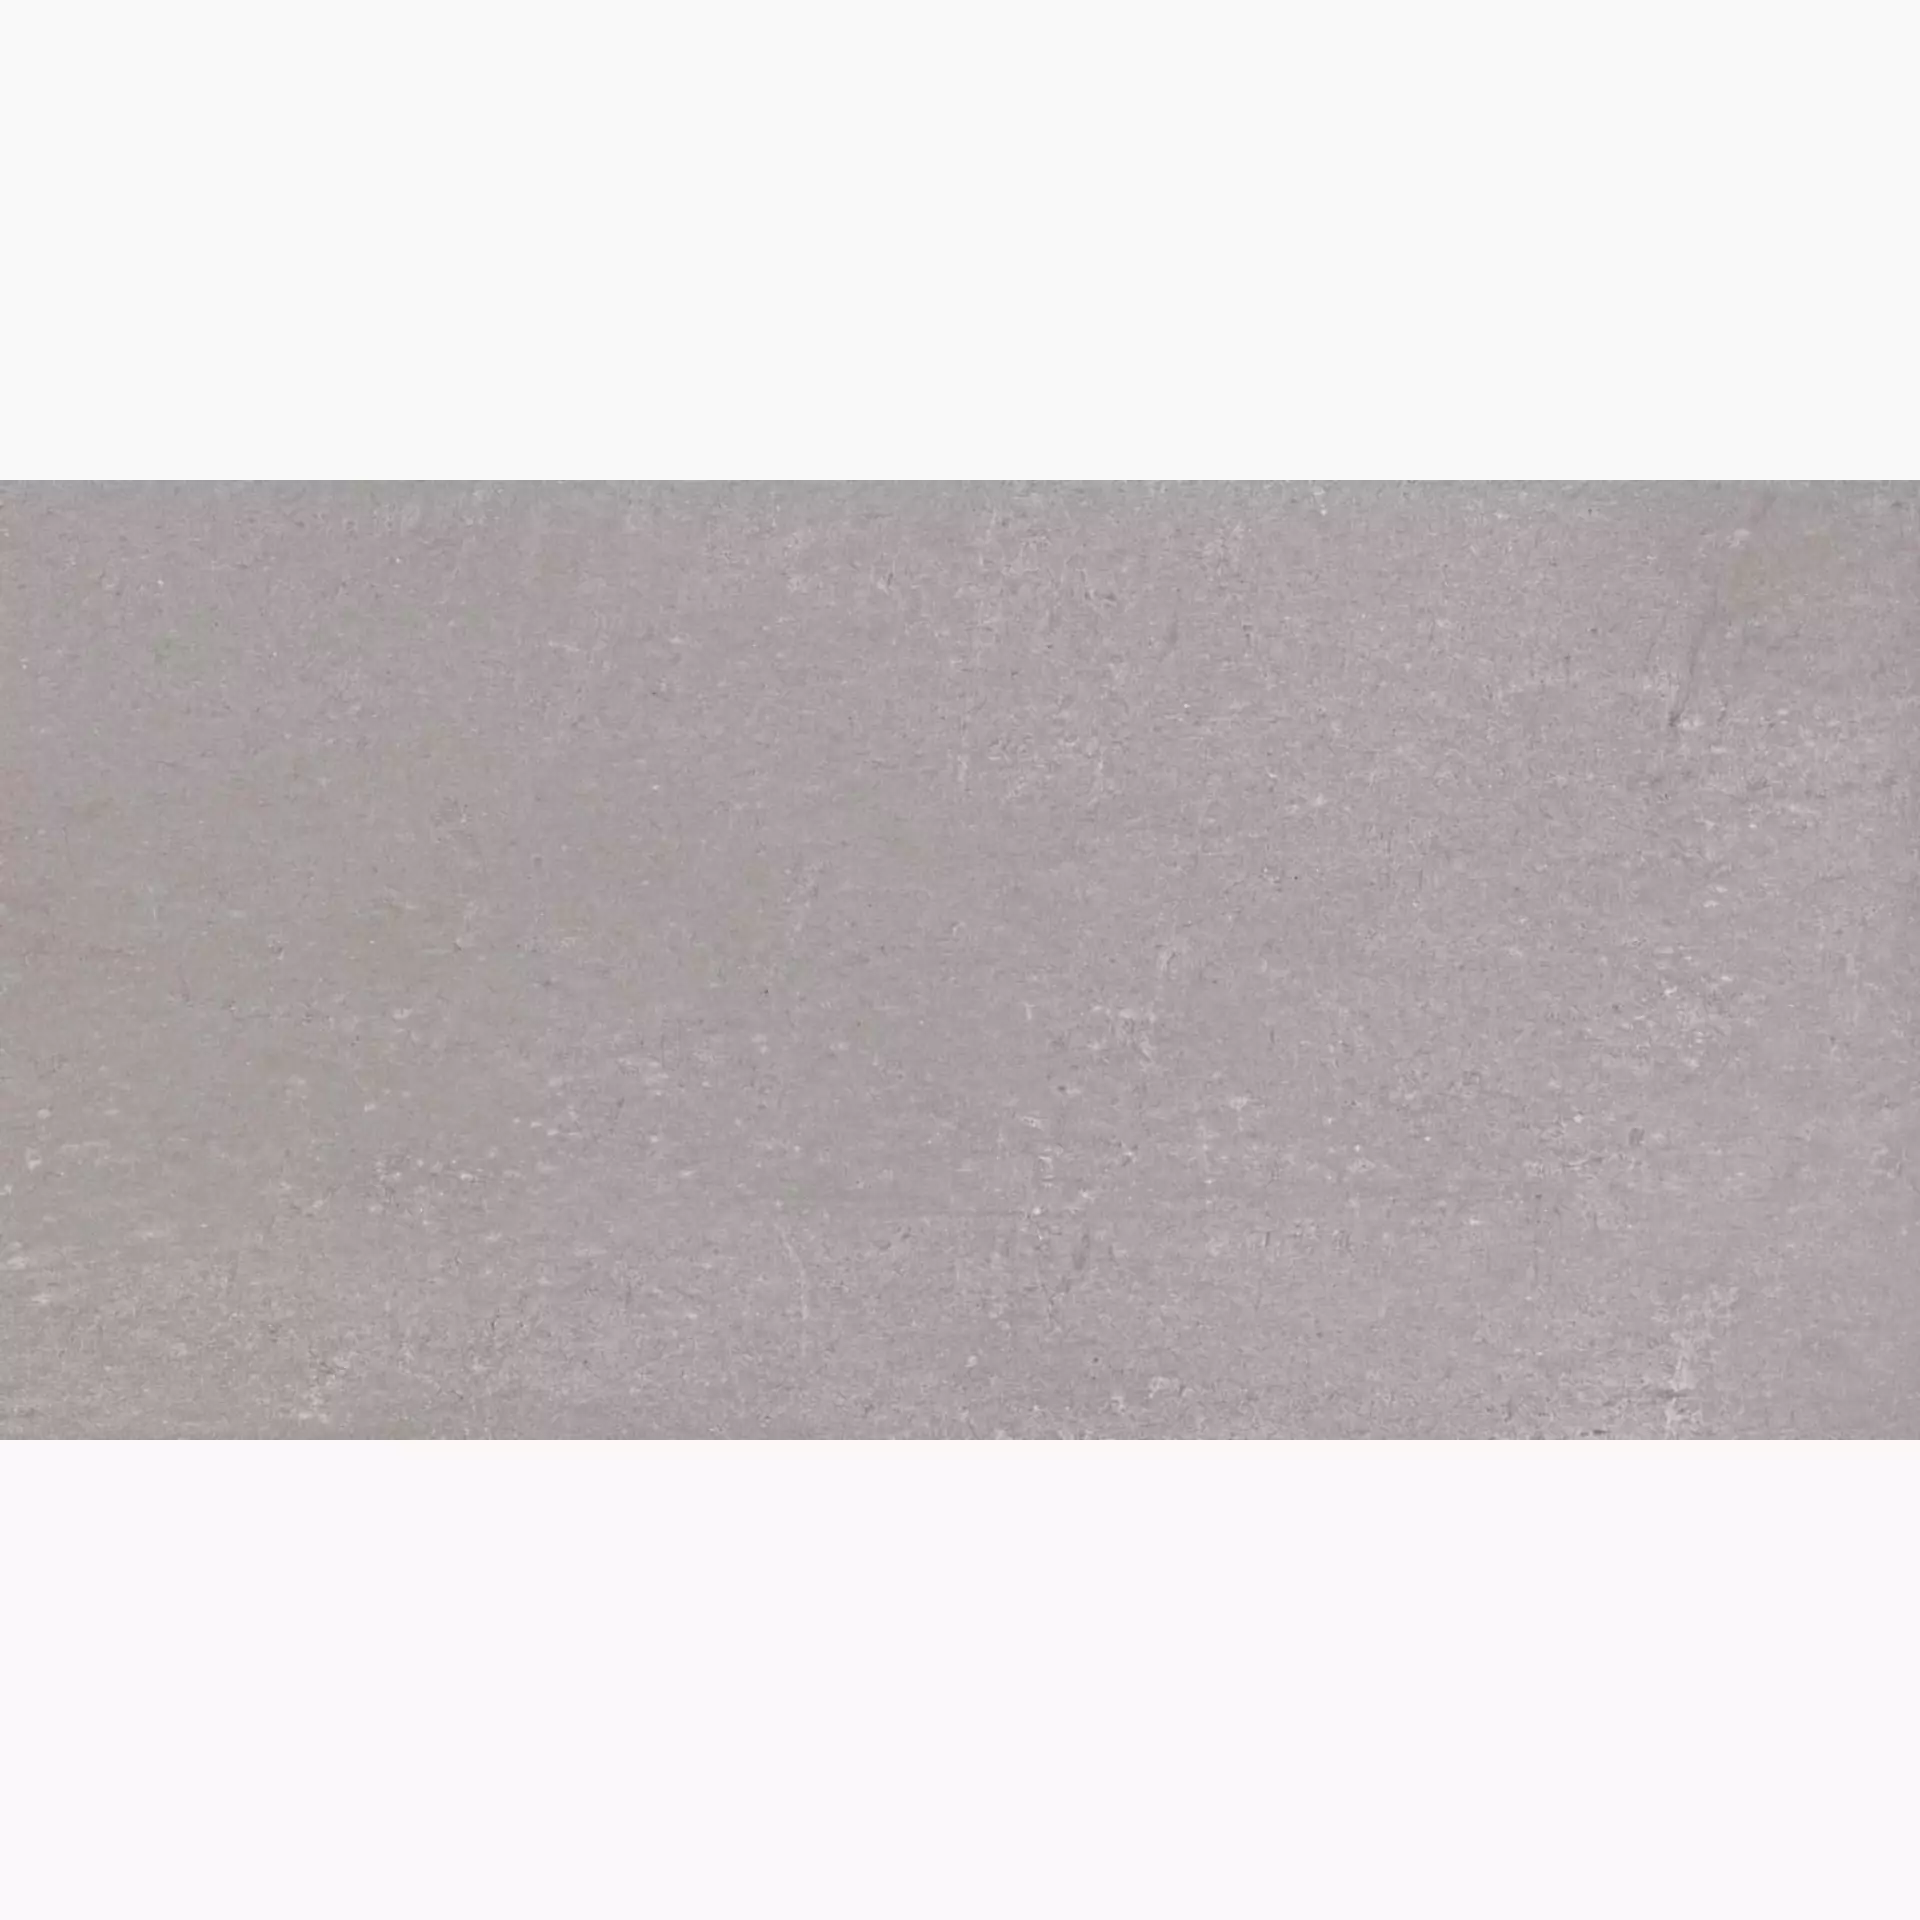 Ragno Rewind Polvere Naturale – Matt R4CG 30x60cm rektifiziert 10mm